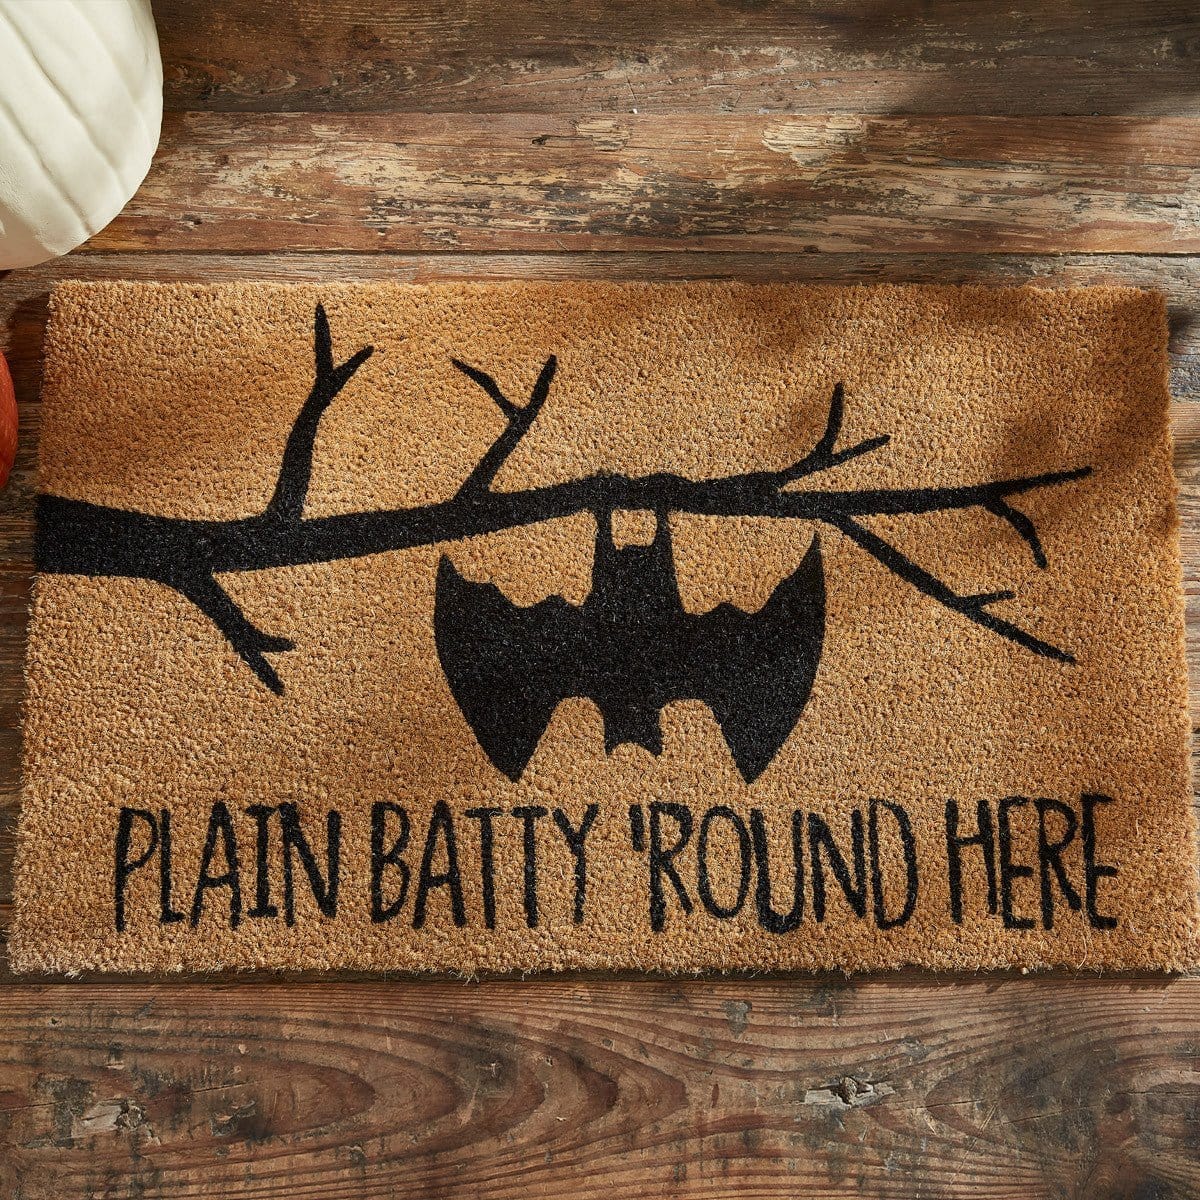 Plain Batty &#39;Round Here Doormat-Park Designs-The Village Merchant